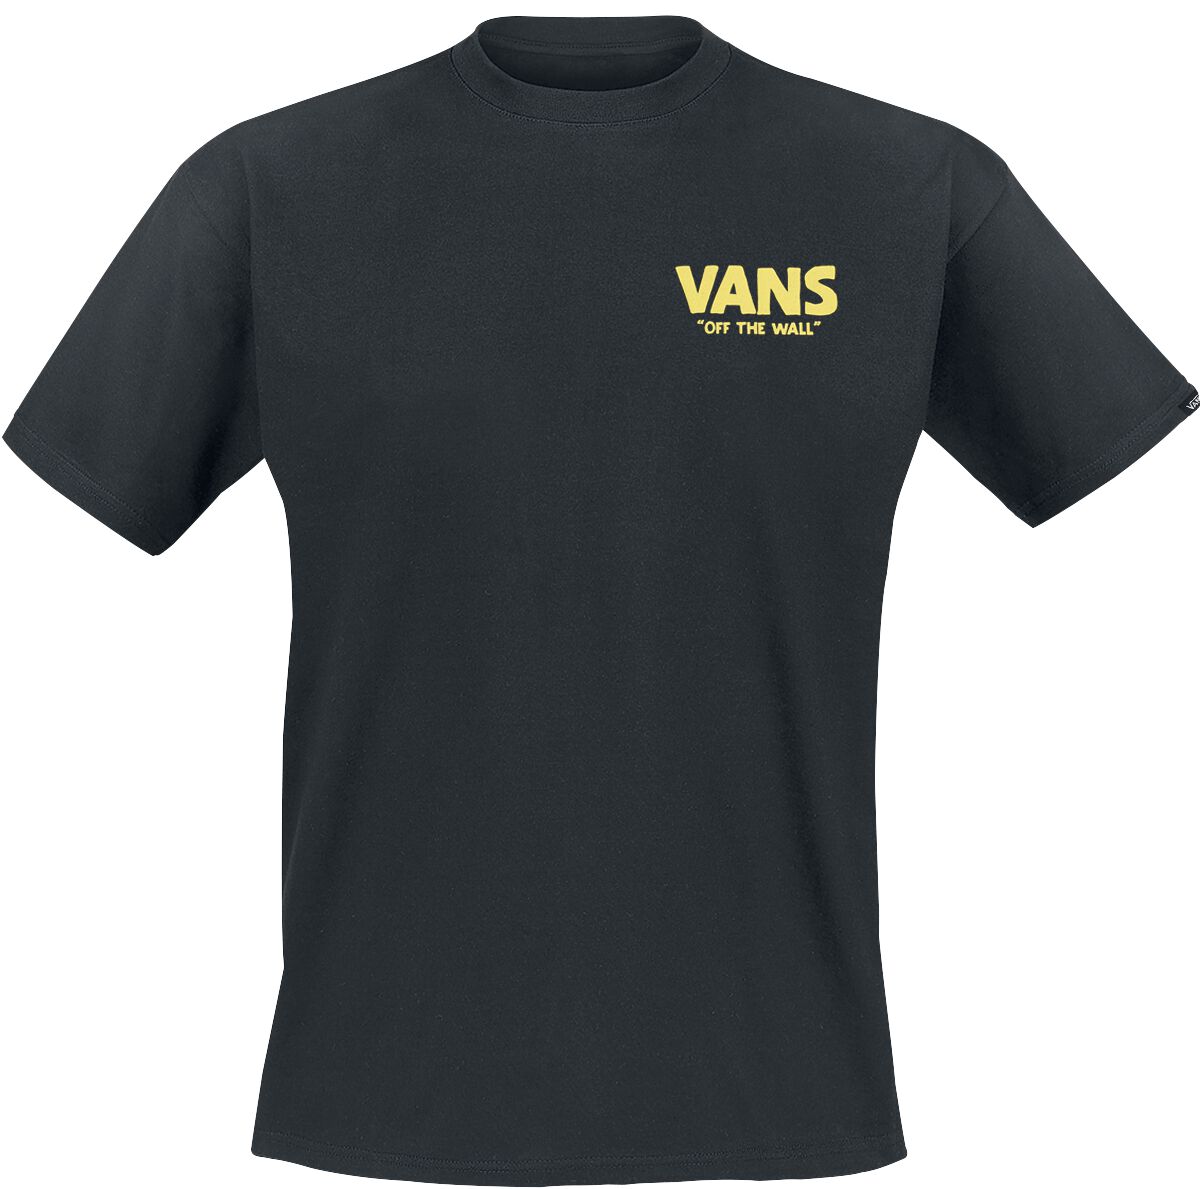 Vans T-Shirt - Stay Cool Tee - S bis XXL - für Männer - Größe L - schwarz